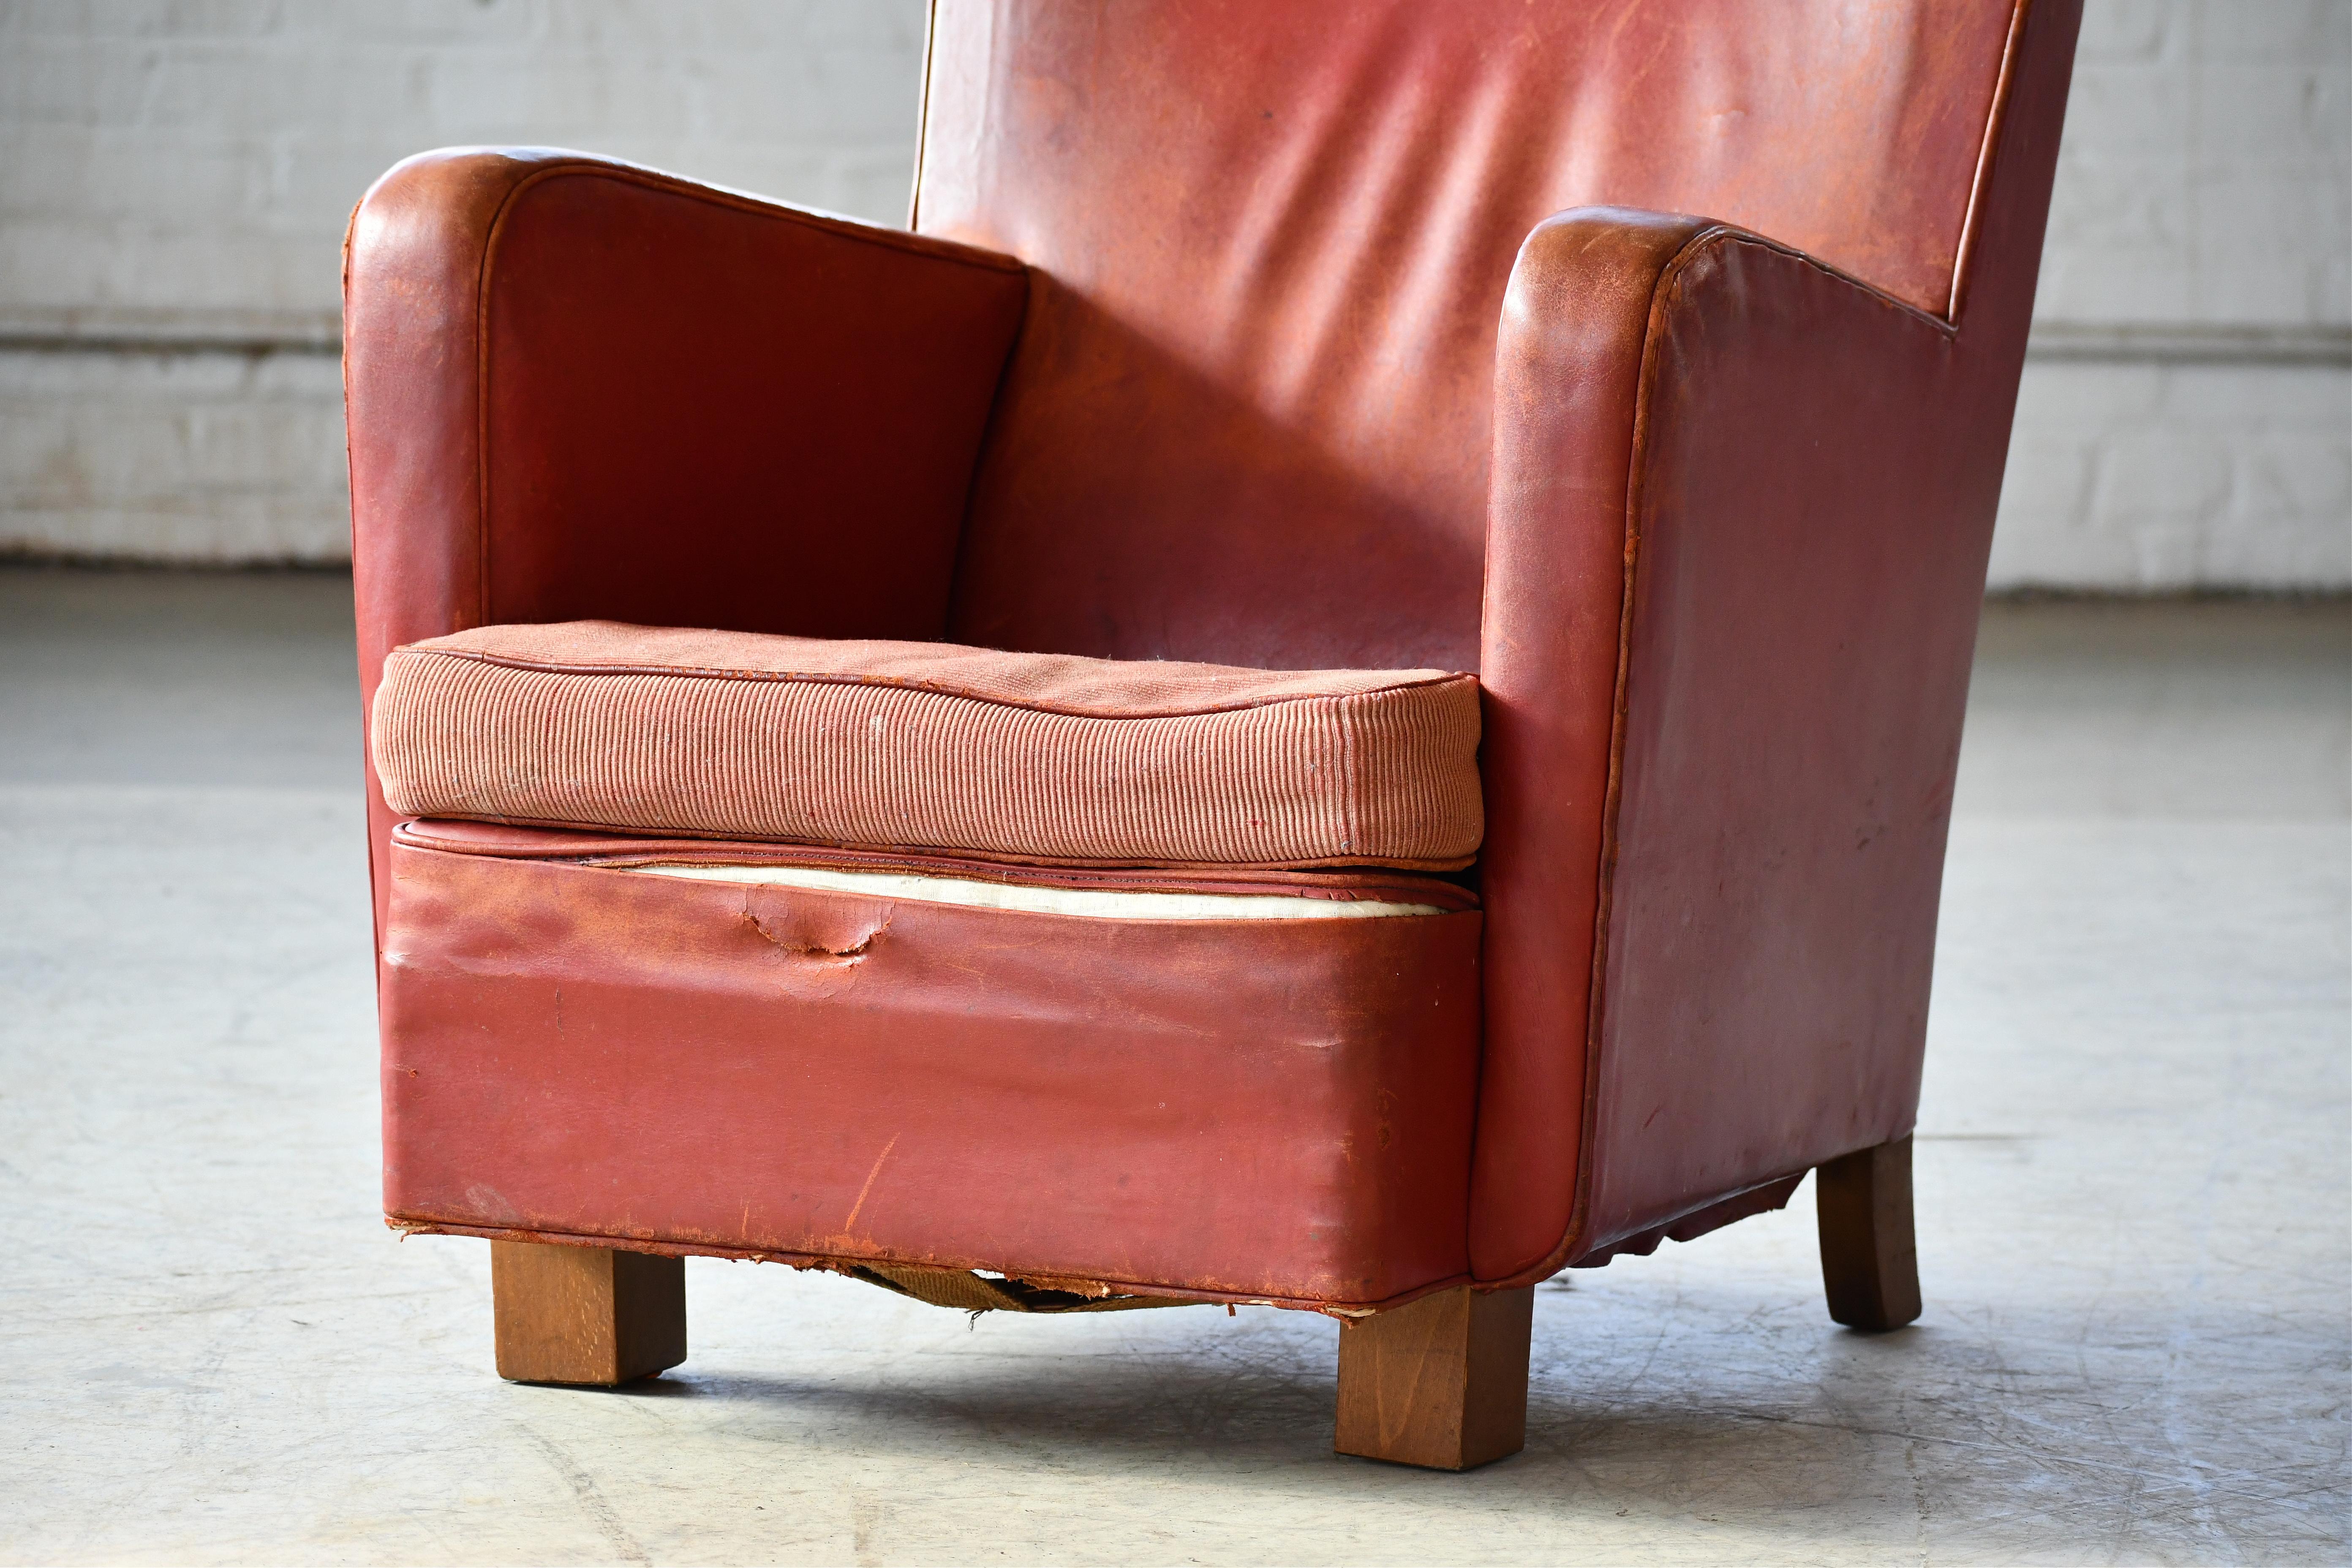 Milieu du XXe siècle Chaise longue géométrique danoise moderne des années 1930 en cuir rougeâtre V